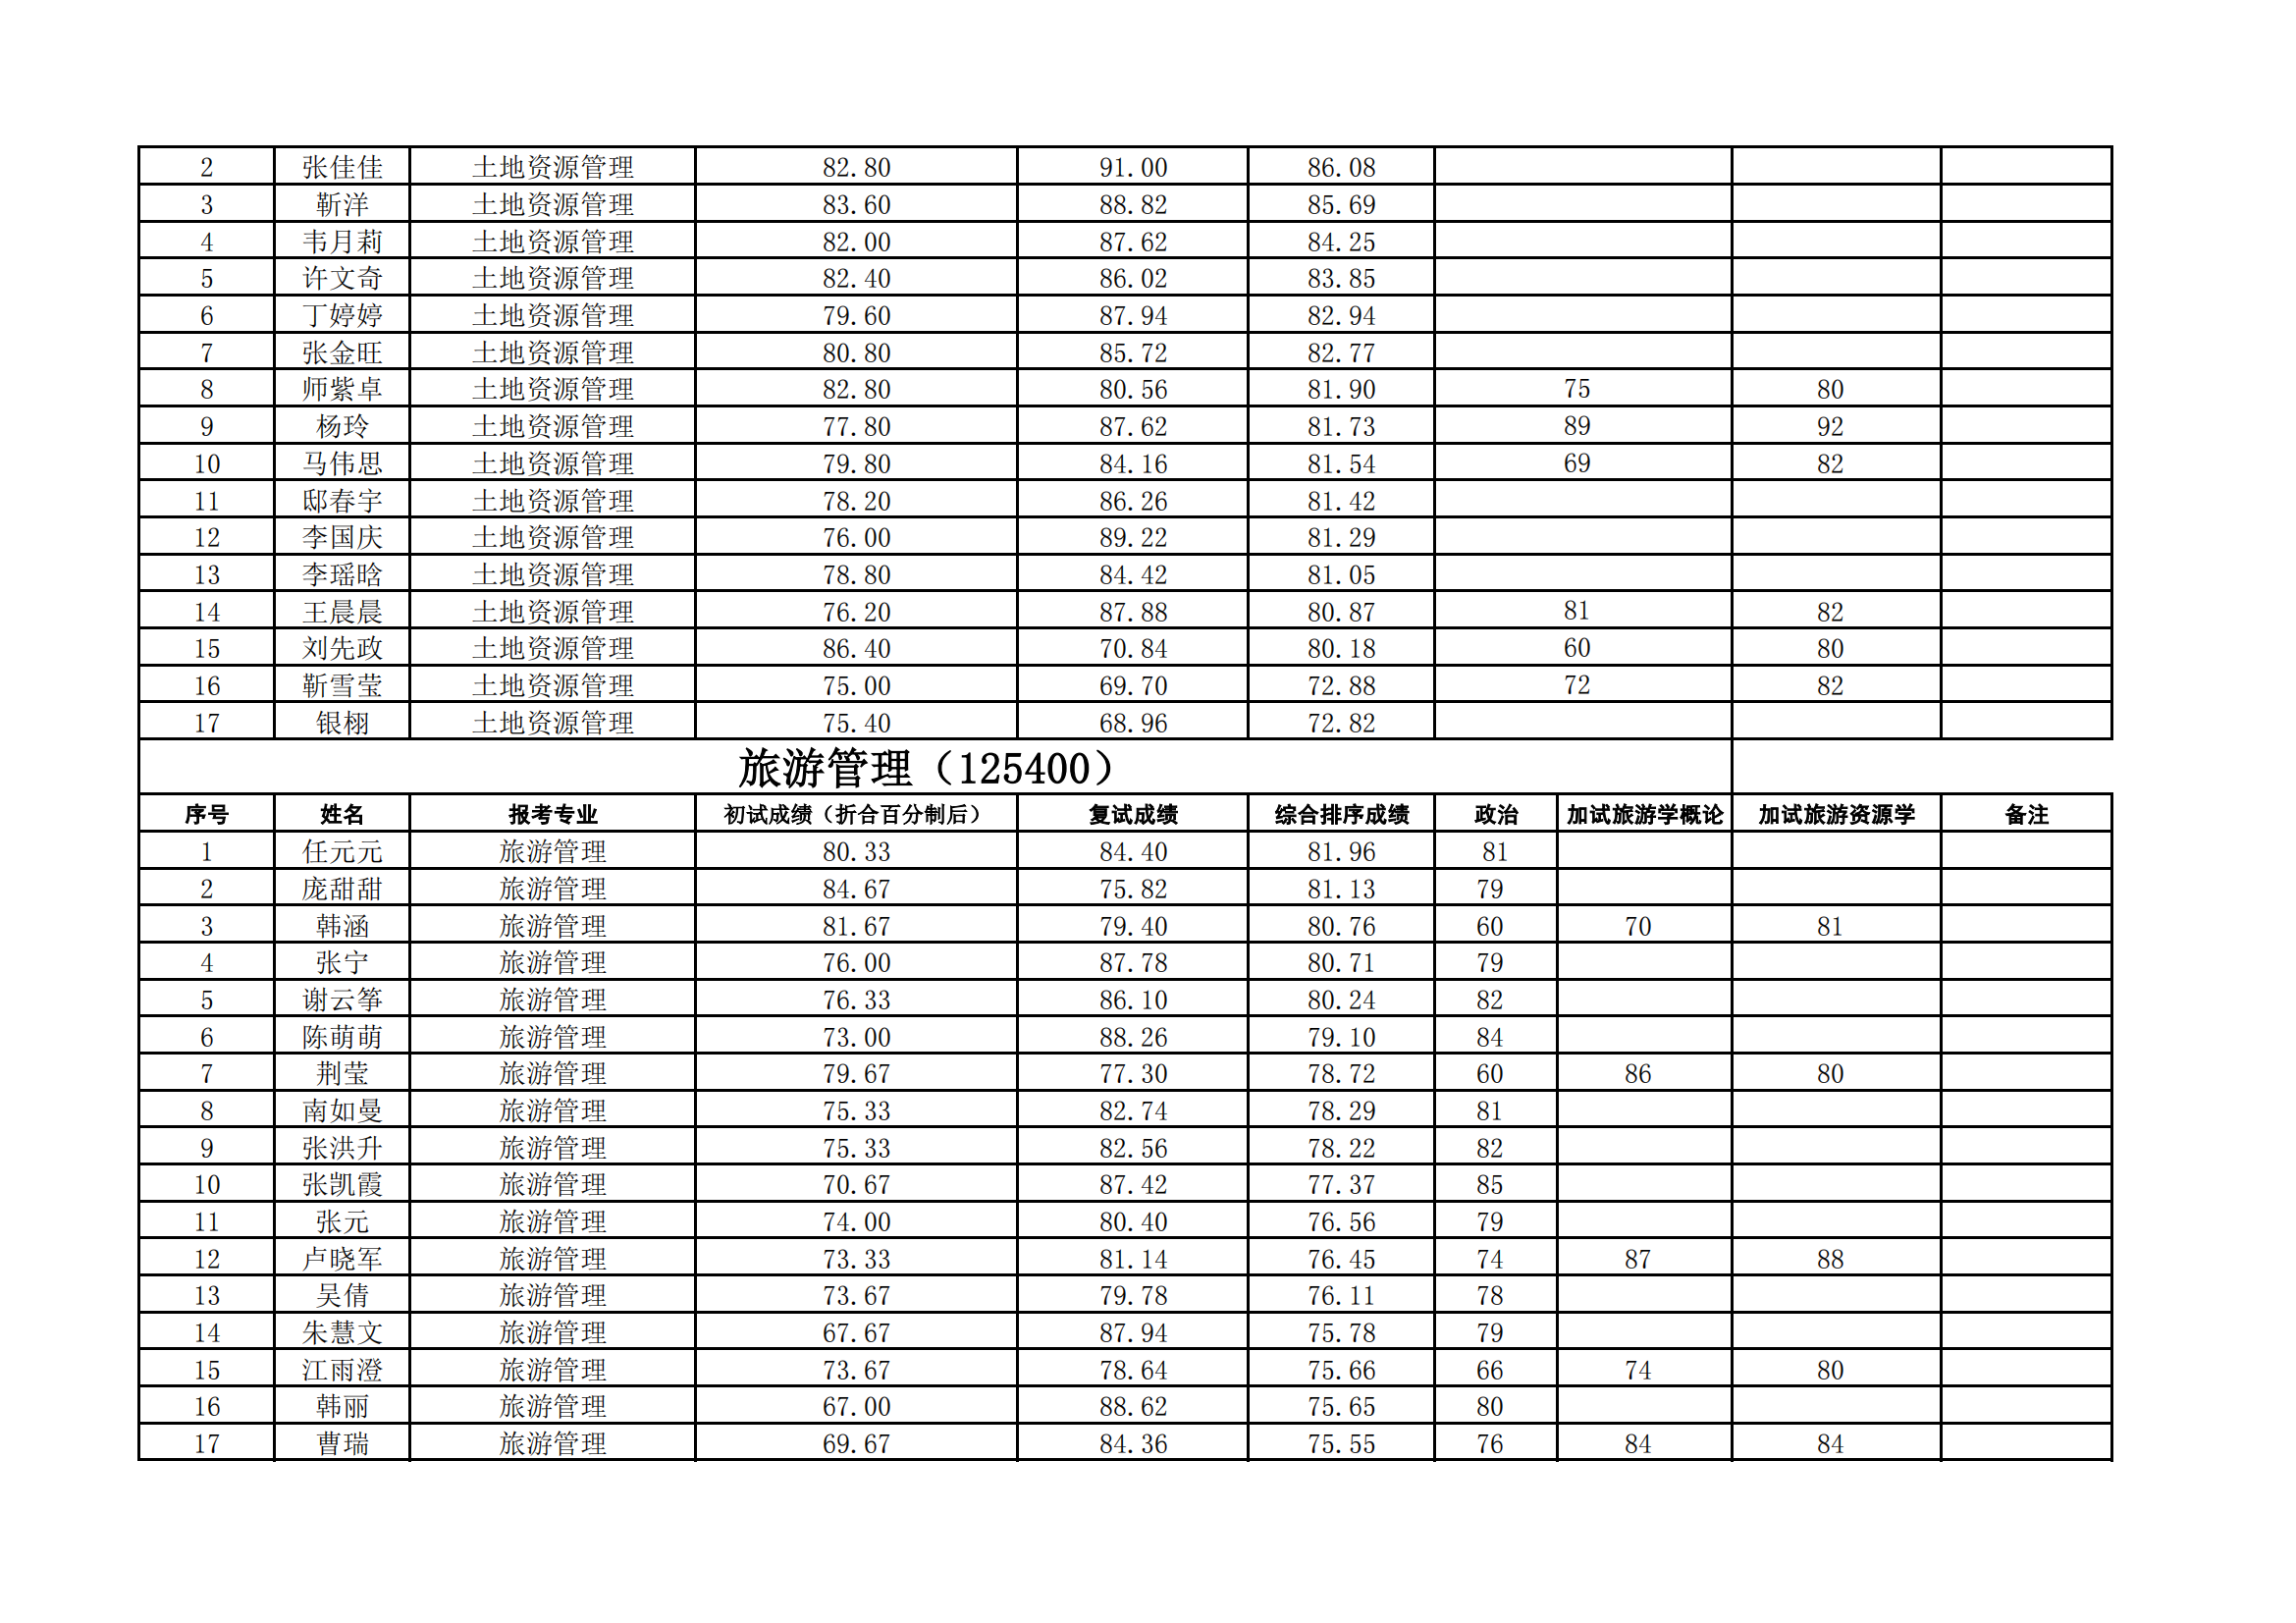 郑州大学管理学院2023年硕士研究生复试结果综合排序公示表_02.png